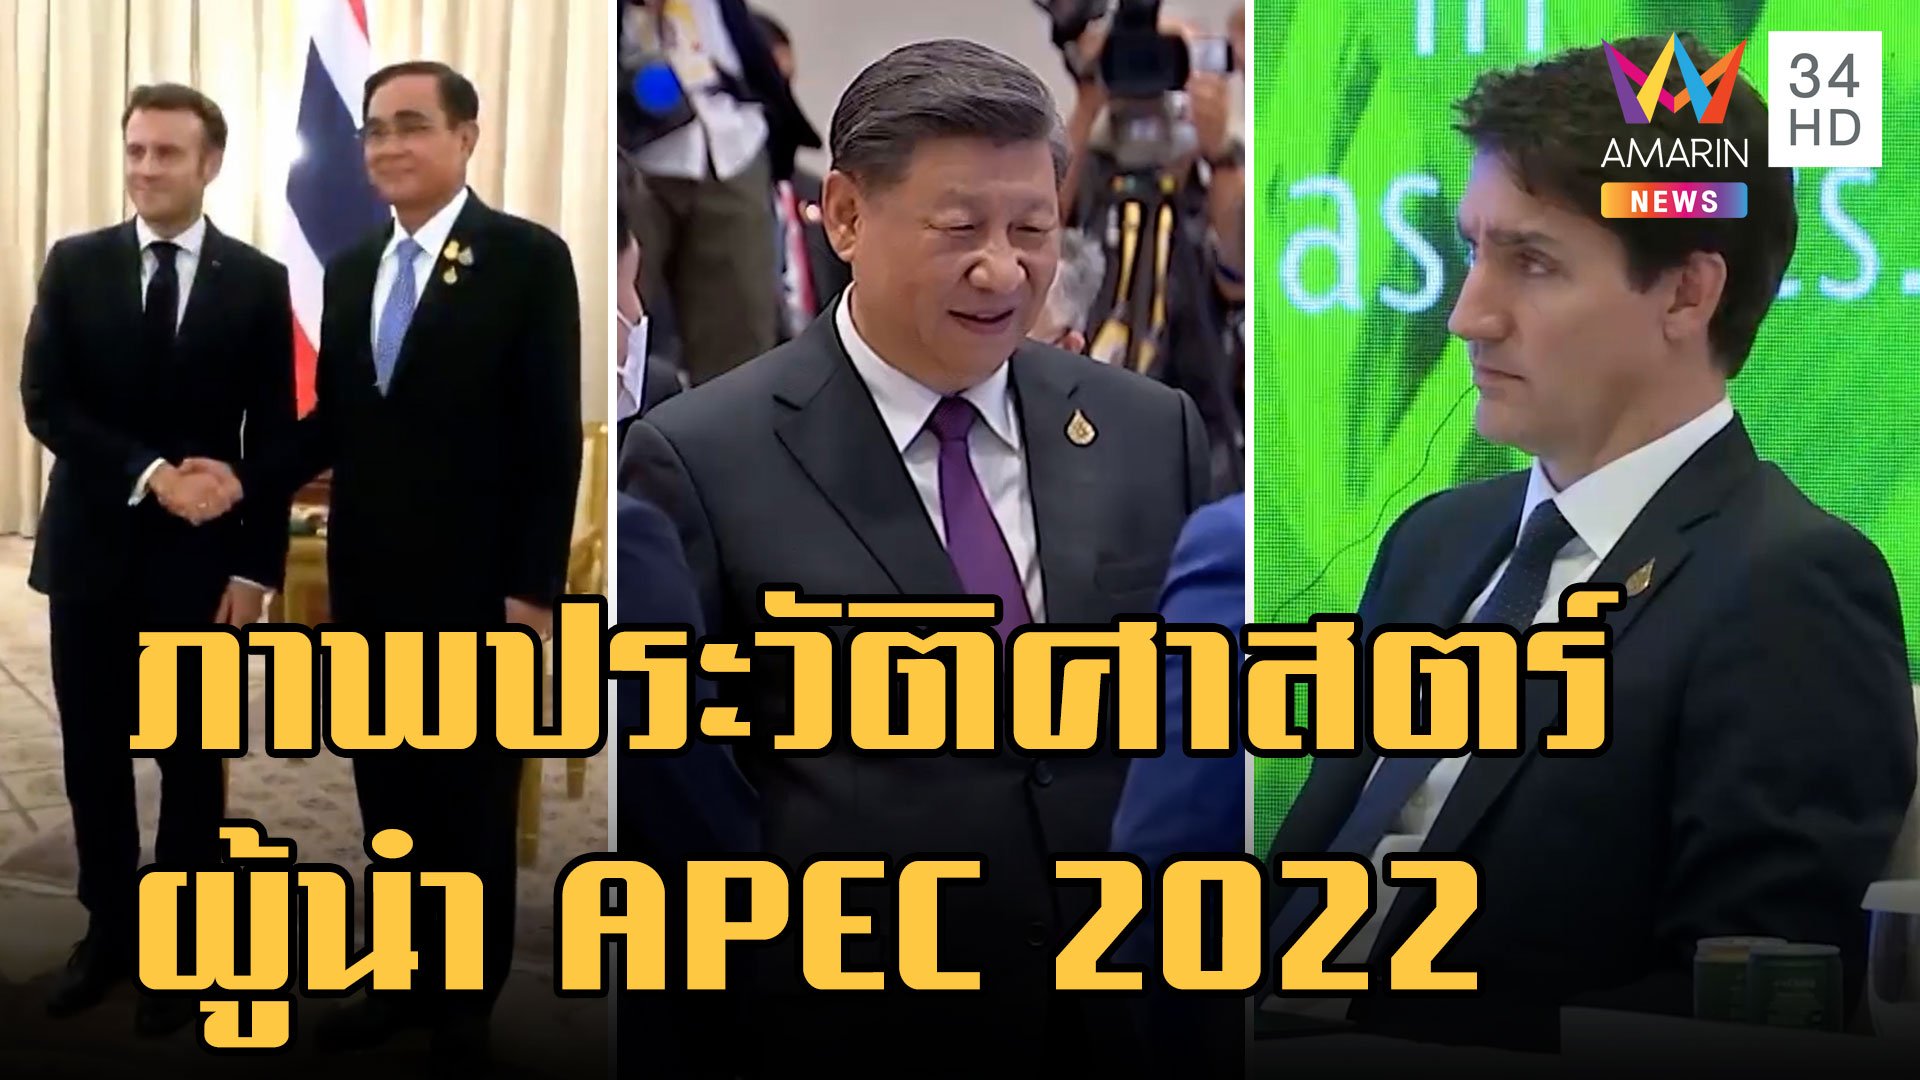 ภาพประวัติศาสตร์ความร่วมมือของผู้นำ APEC 2022 | ข่าวอรุณอมรินทร์ | 19 พ.ย. 65 | AMARIN TVHD34